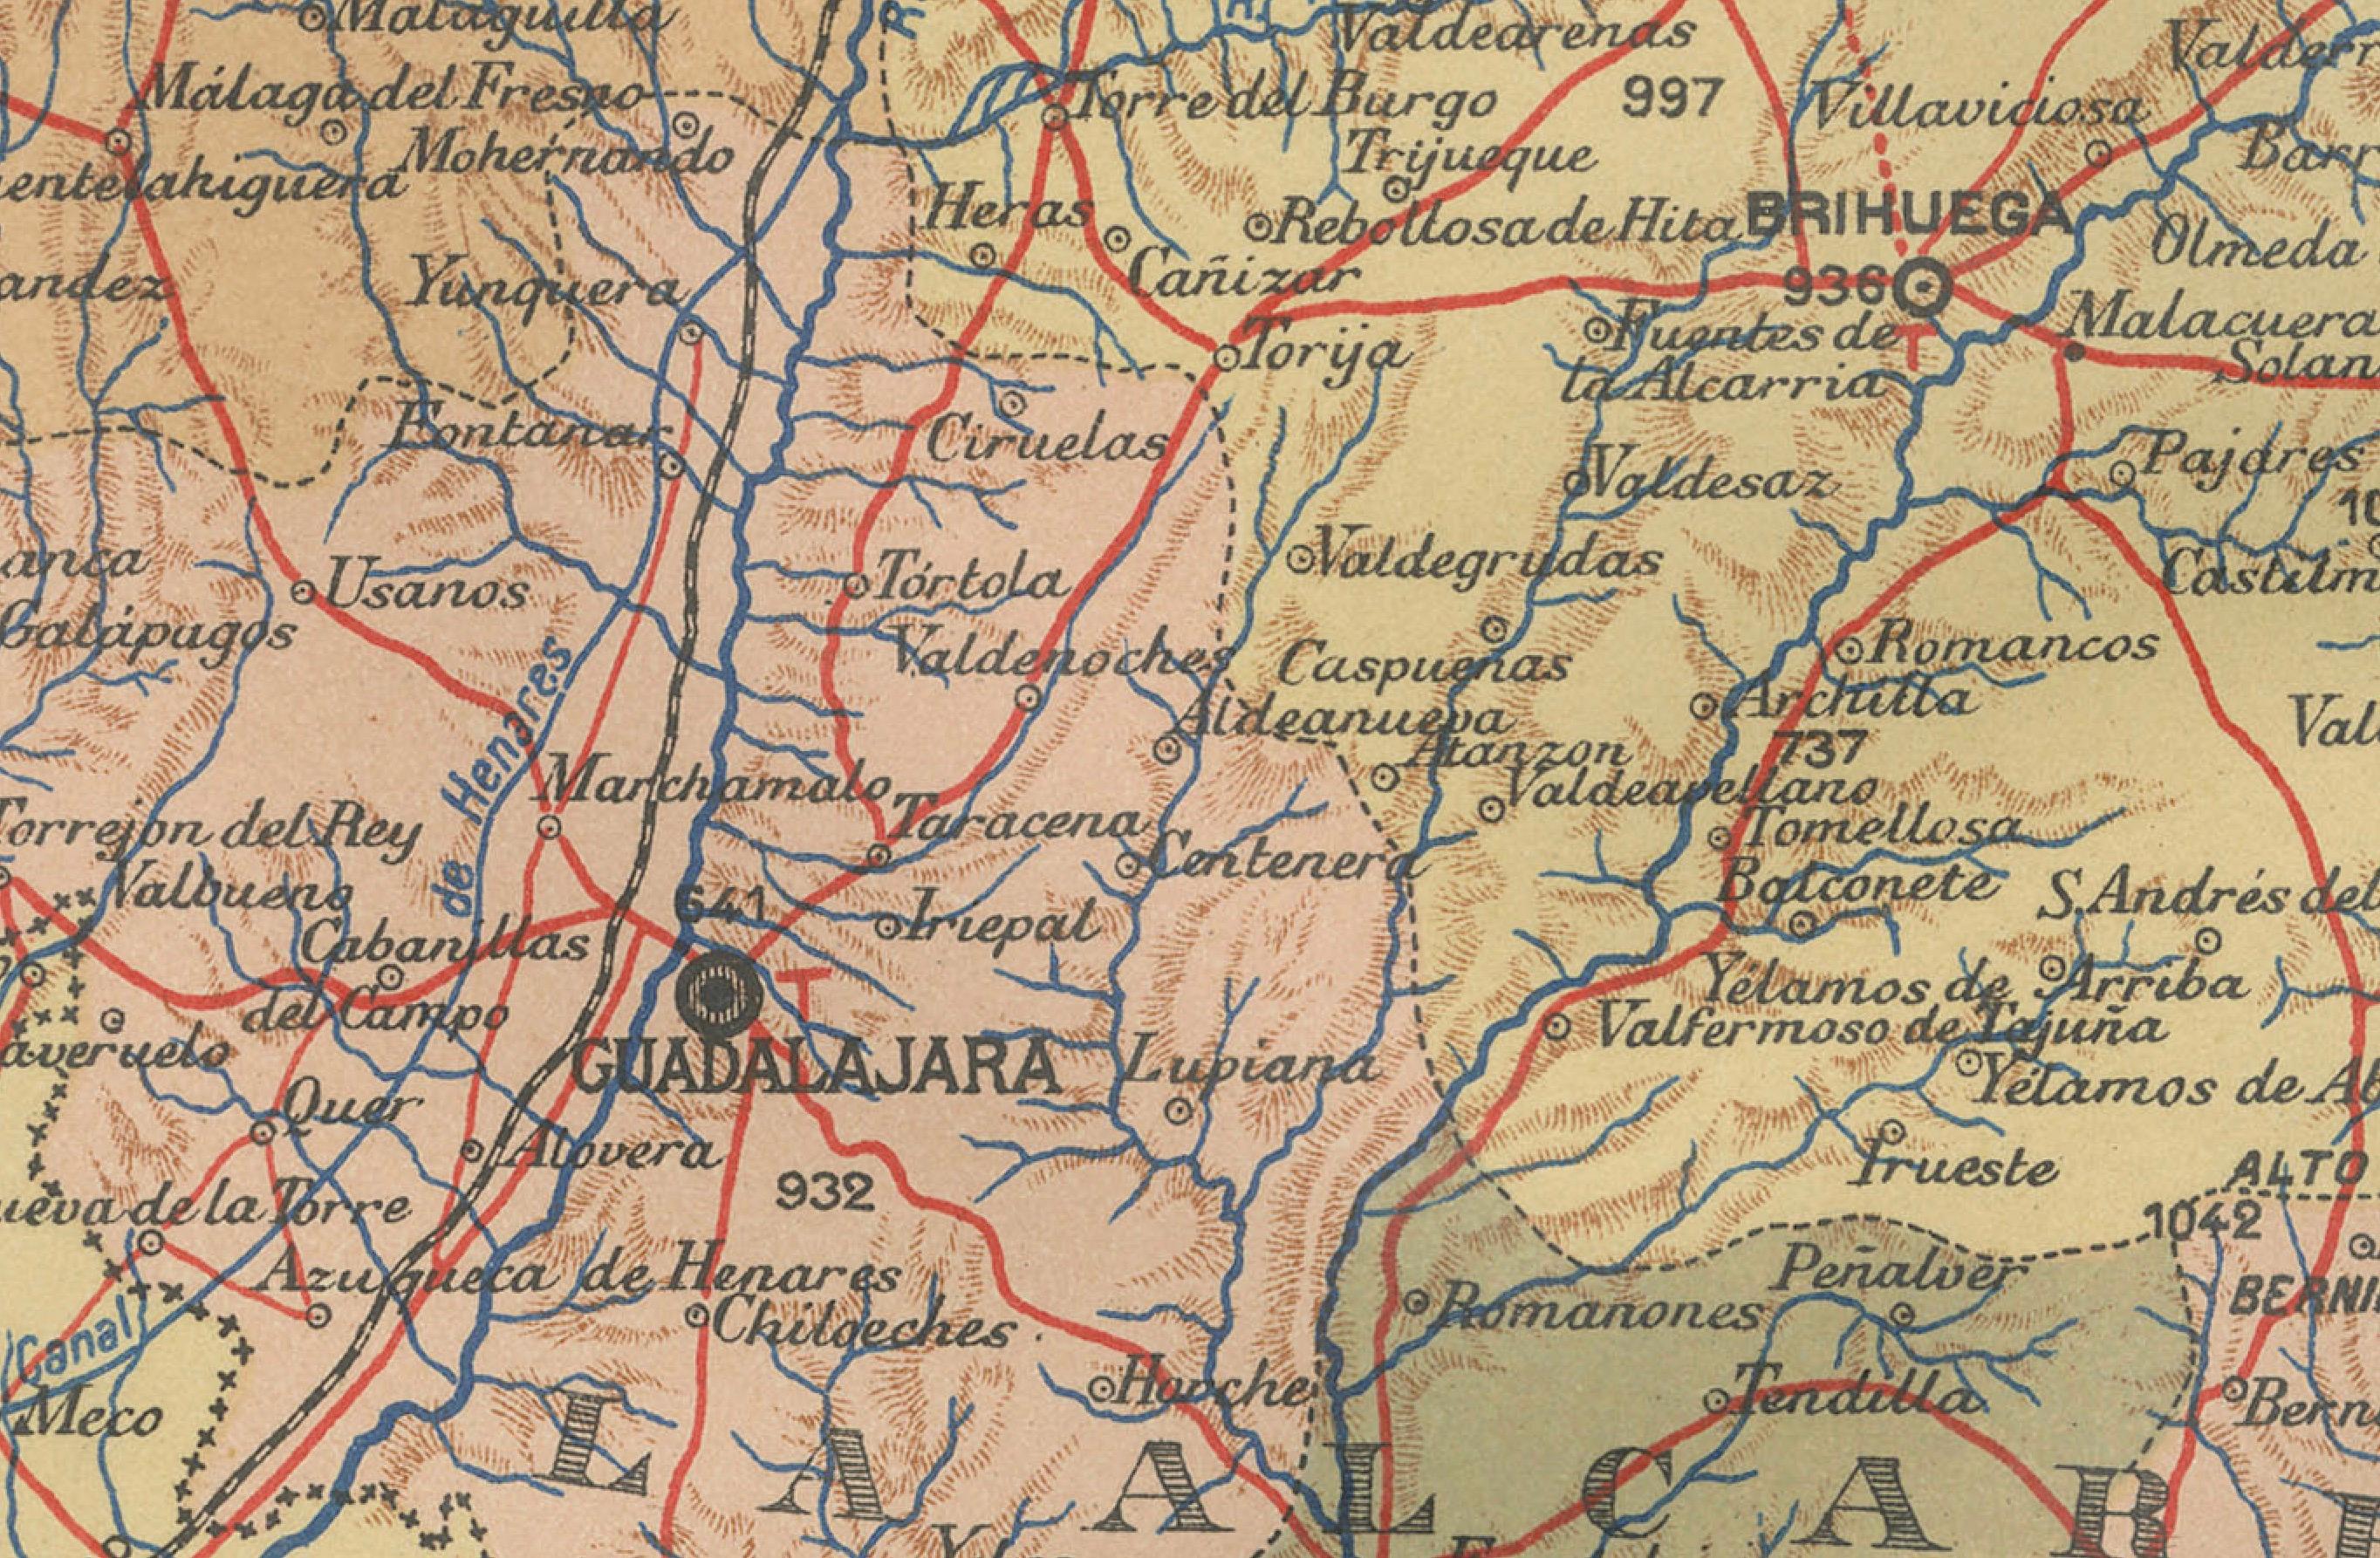 Die Karte zeigt die Provinz Guadalajara, Teil der autonomen Gemeinschaft Kastilien-La Mancha in Spanien, im Jahr 1902. Die Karte enthält verschiedene geografische und infrastrukturelle Merkmale:

Es hebt die abwechslungsreiche Landschaft hervor, zu